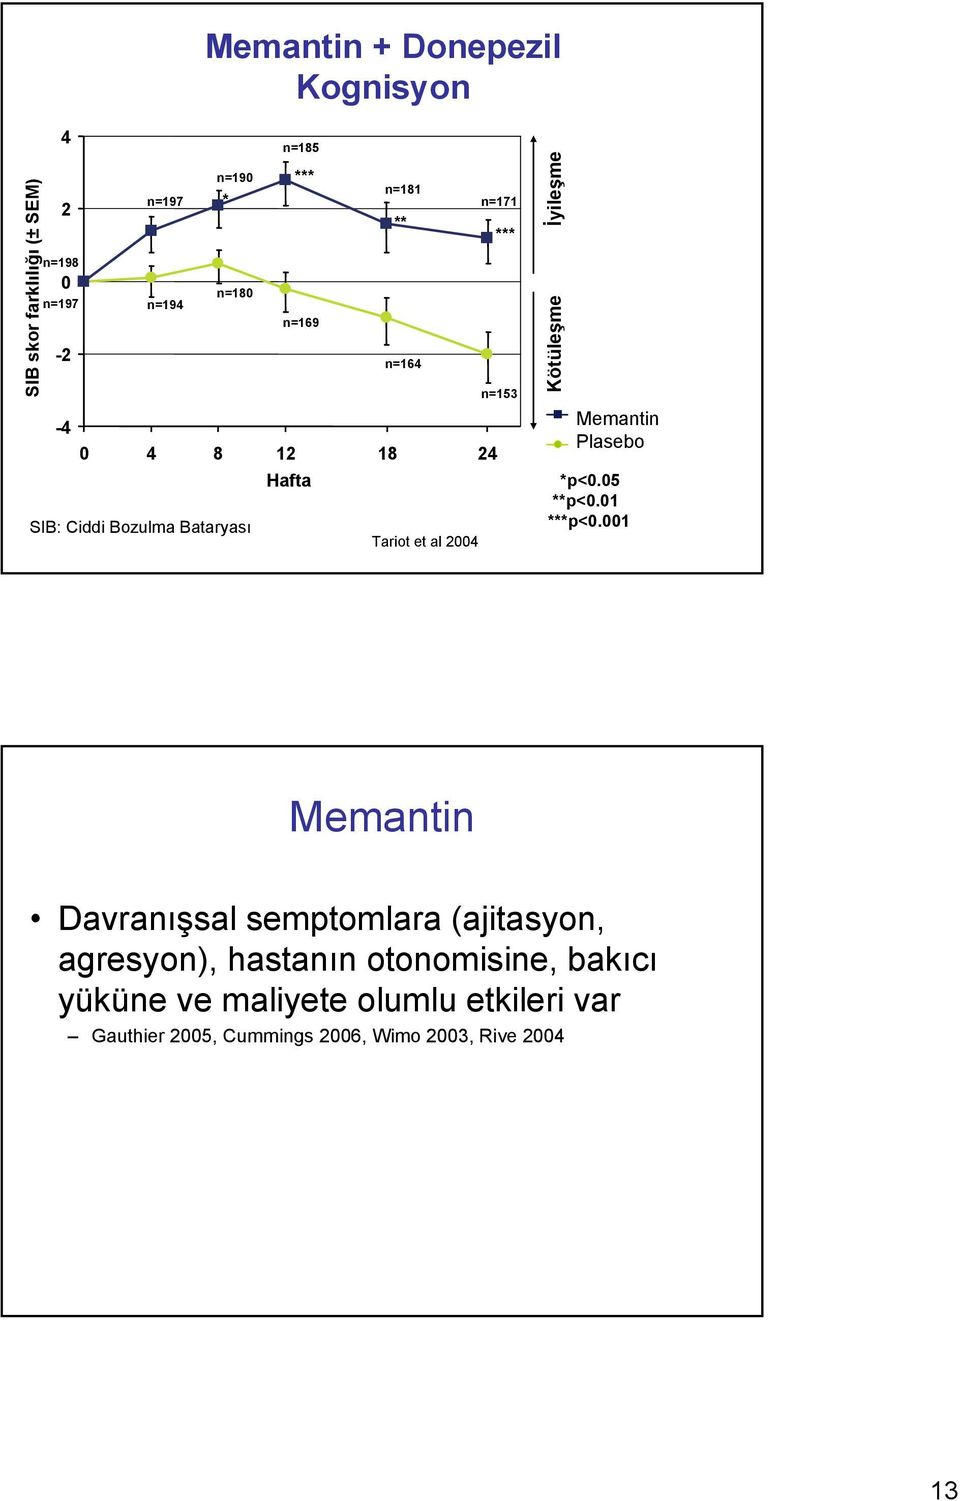 Improvement Worsening Memantine Placebo Plasebo *p<0.05 **p<0.01 ***p<0.